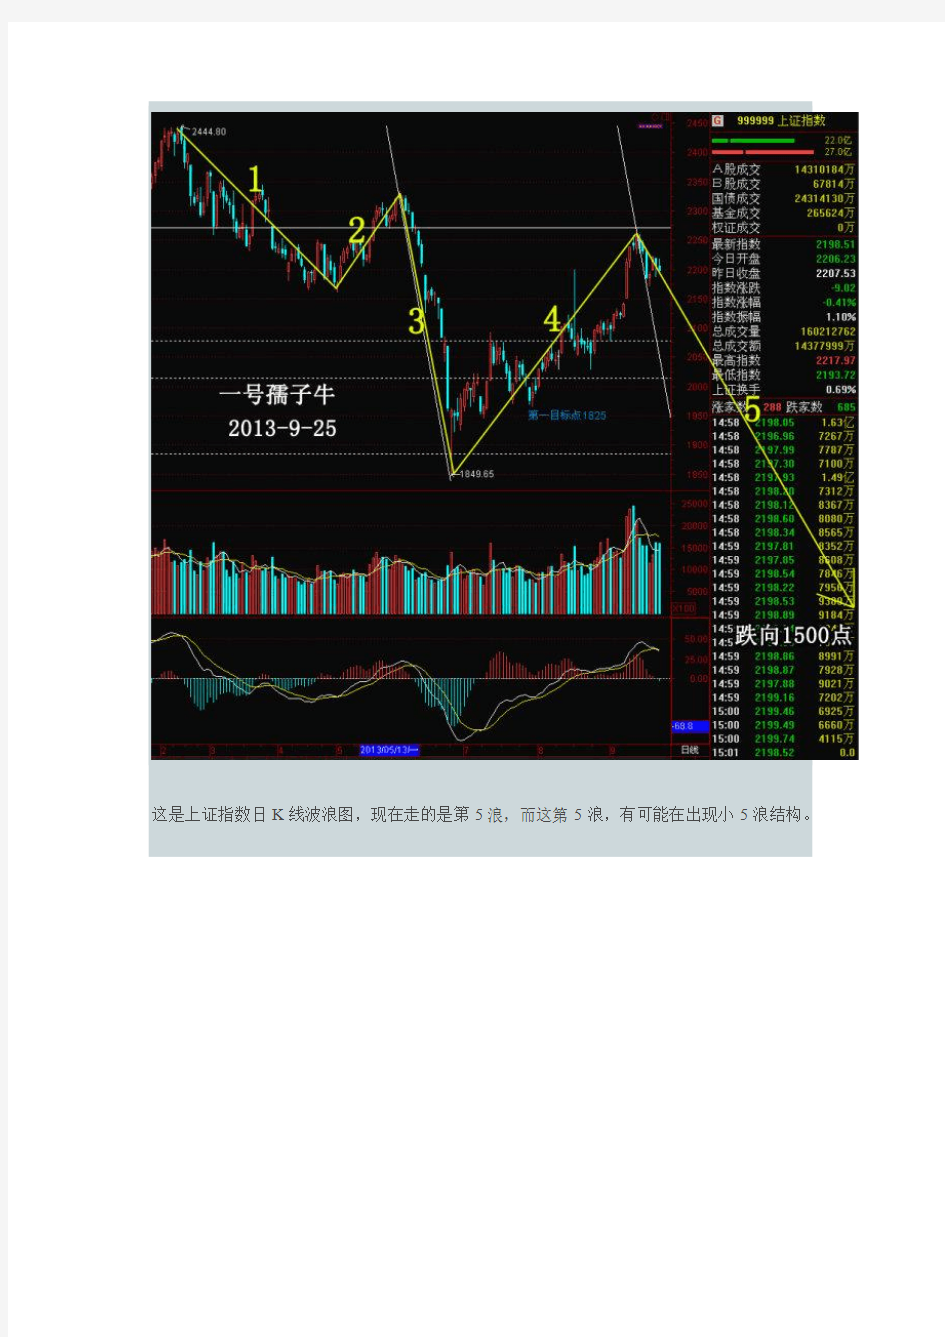 中国股市大揭秘 揭开中国特色波浪的神秘面纱(一)